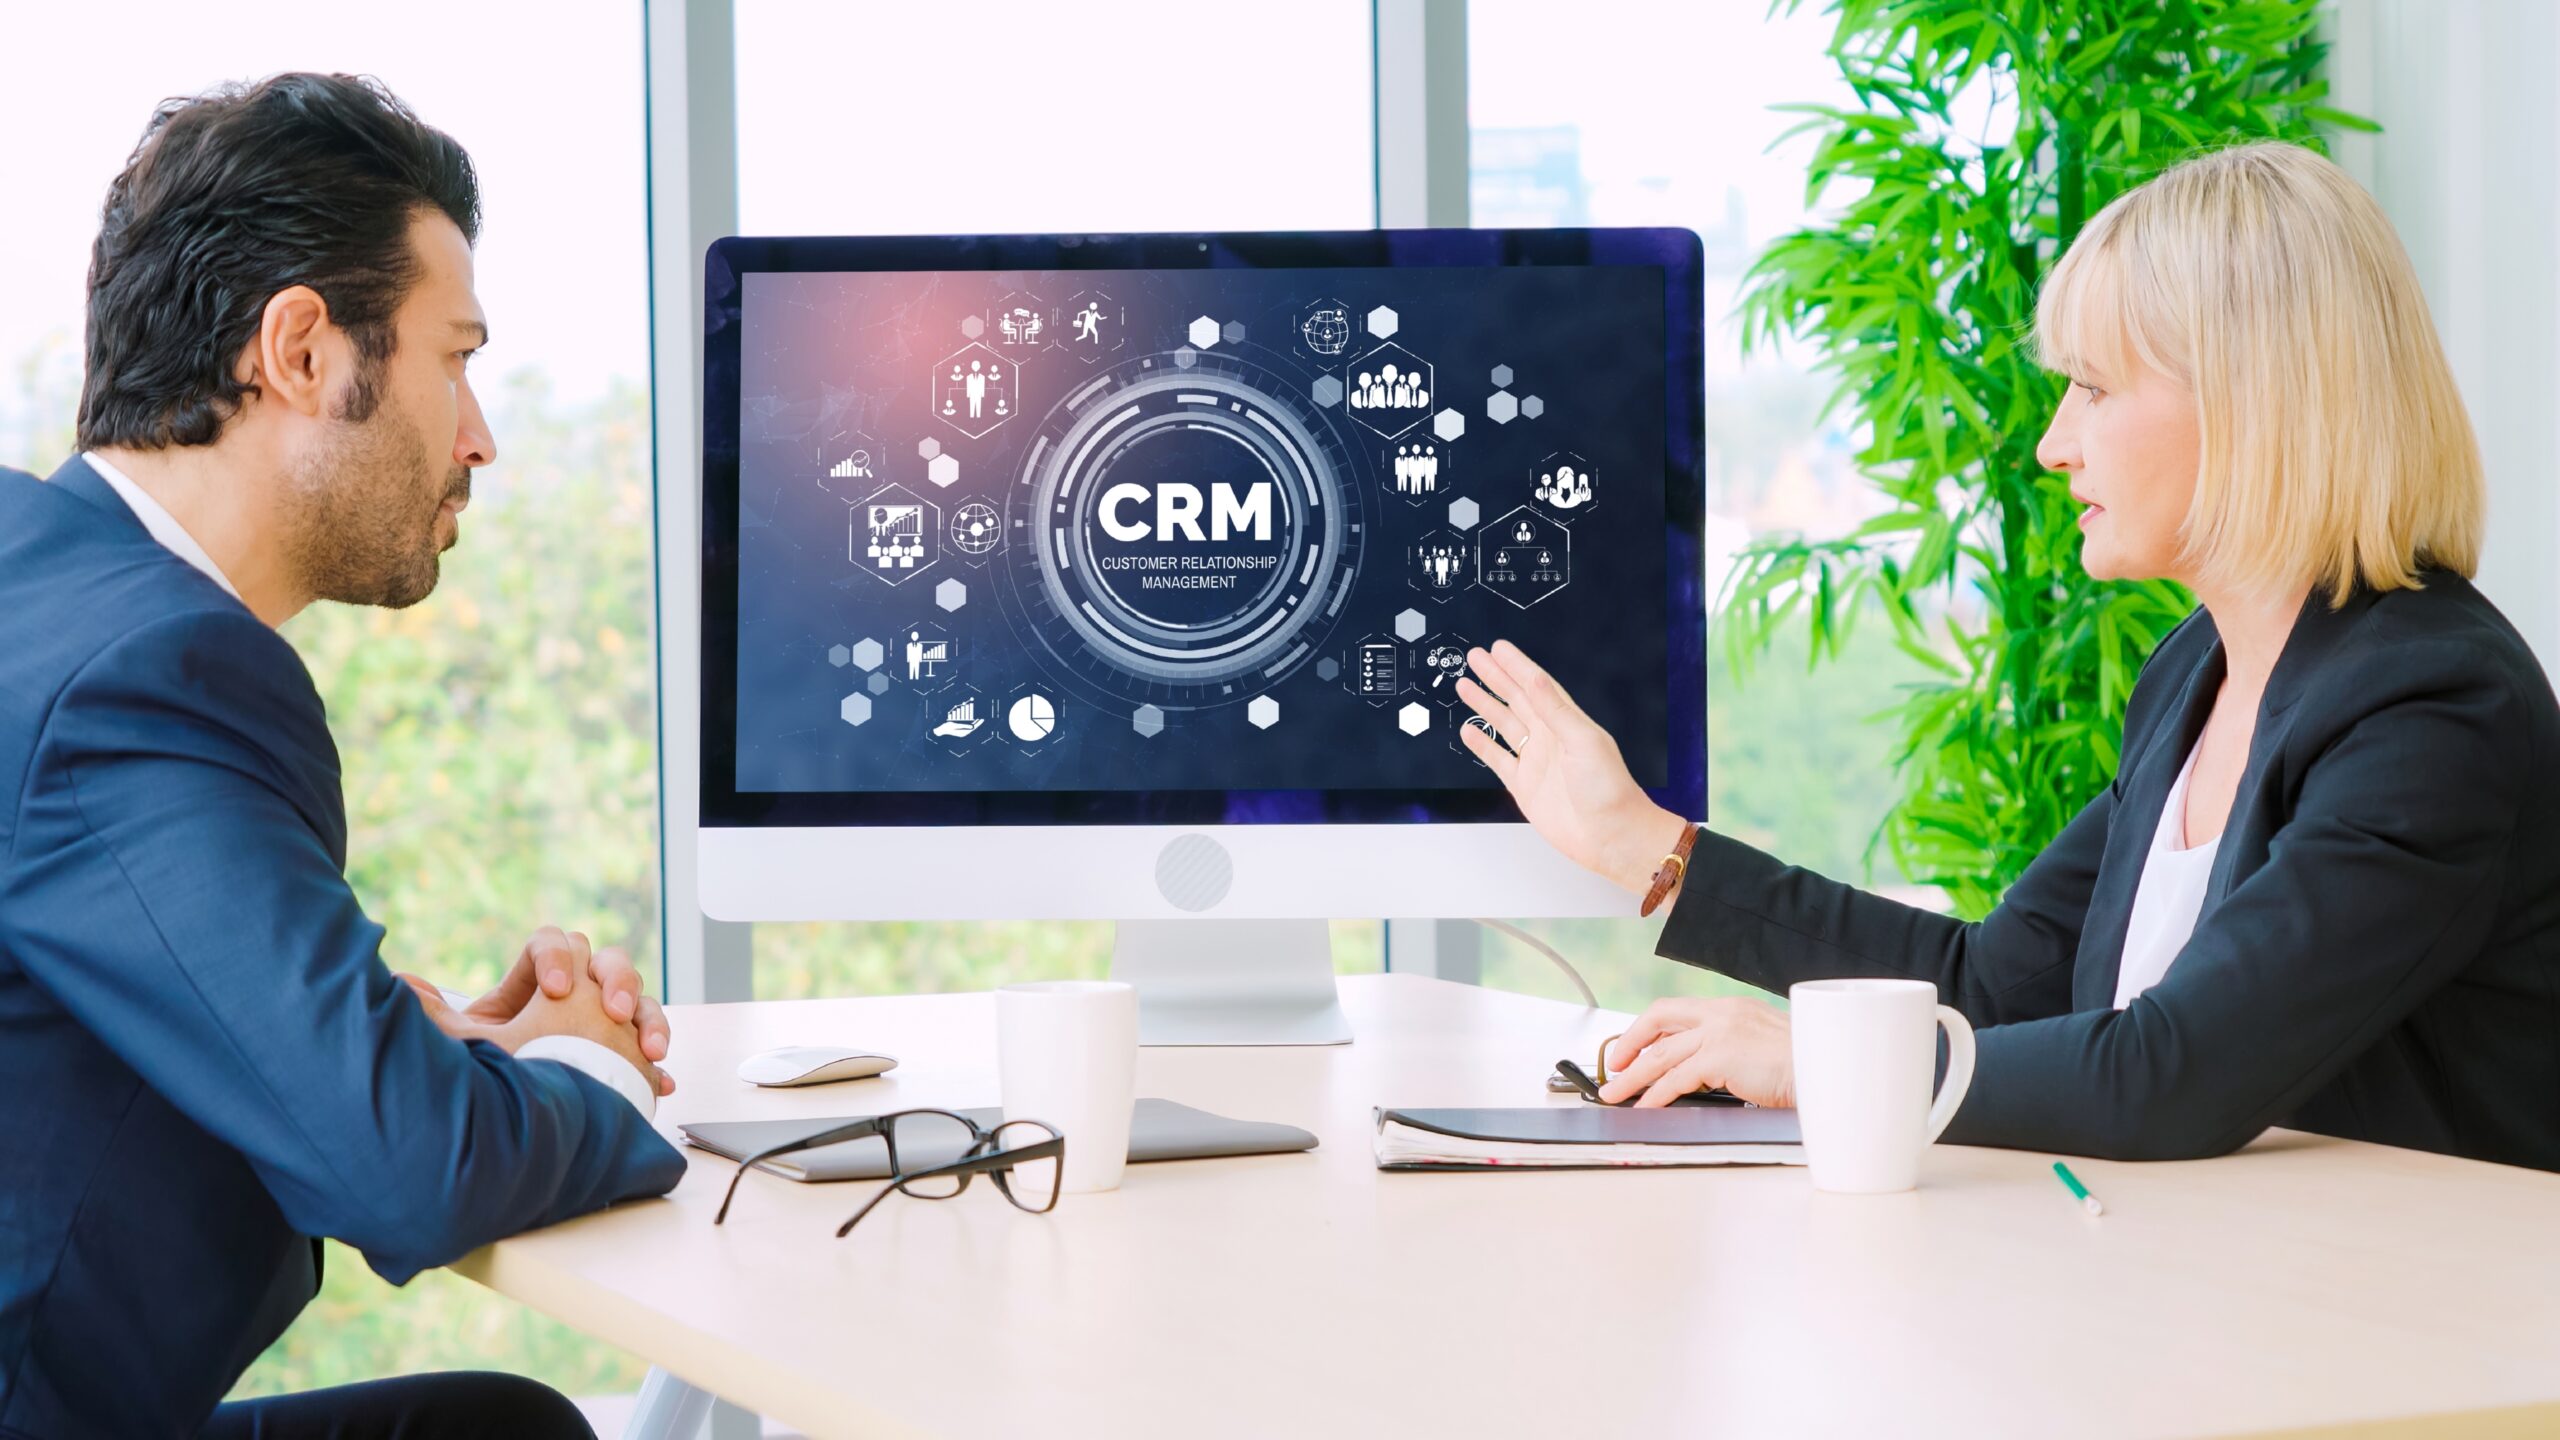 Customer Relationship Management (CRM) Software